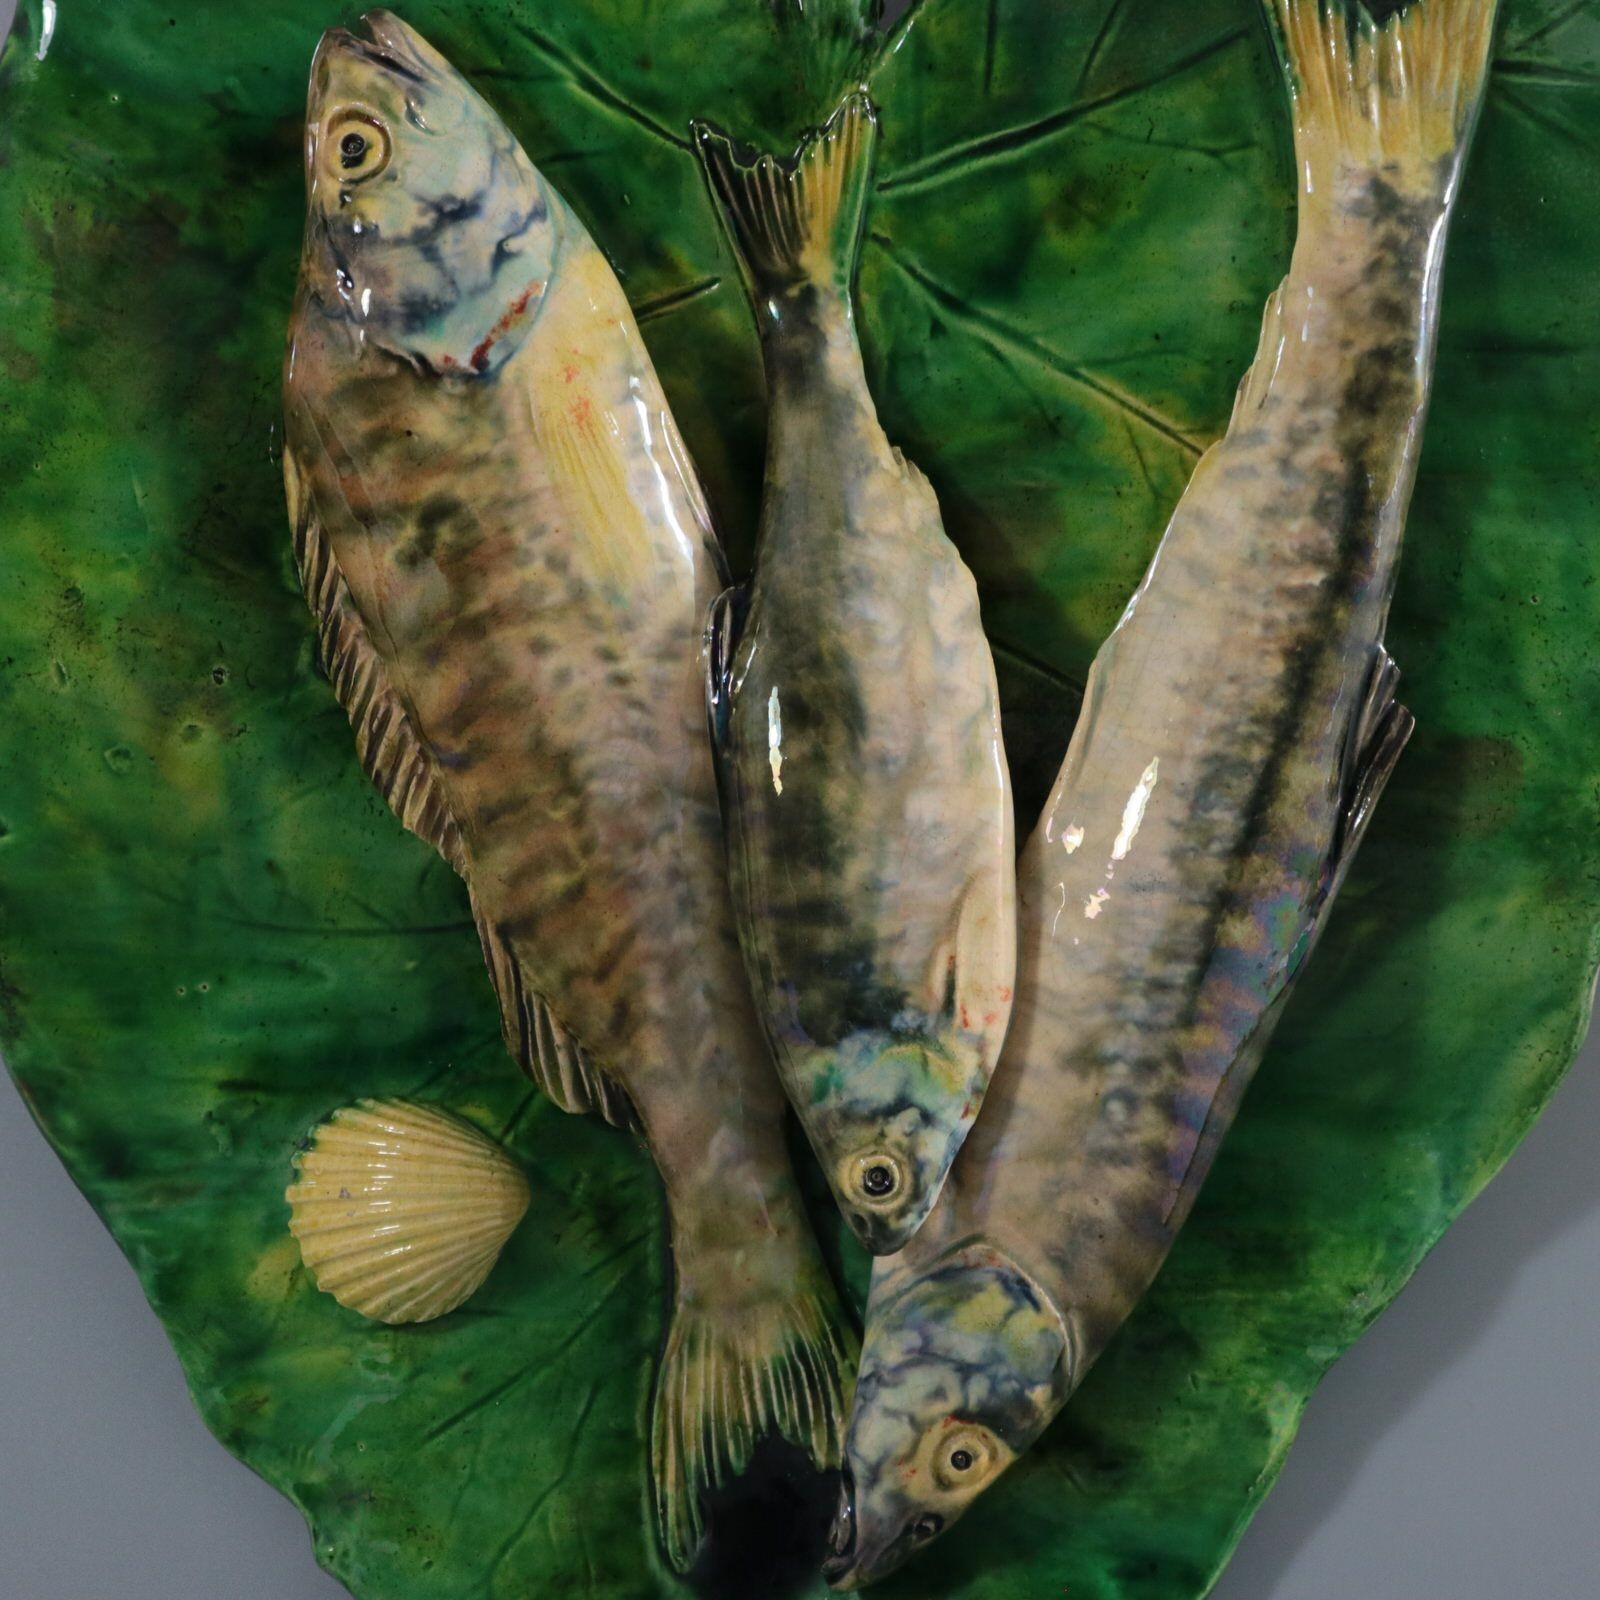 Wandtafel aus französischer Palissy-Majolika von Alfred Renoleau, auf der drei sich überlappende Fische auf einem großen Blatt abgebildet sind. Färbung: Grün, grau, cremefarben, sind vorherrschend. Das Stück trägt die Herstellermarken der Töpferei